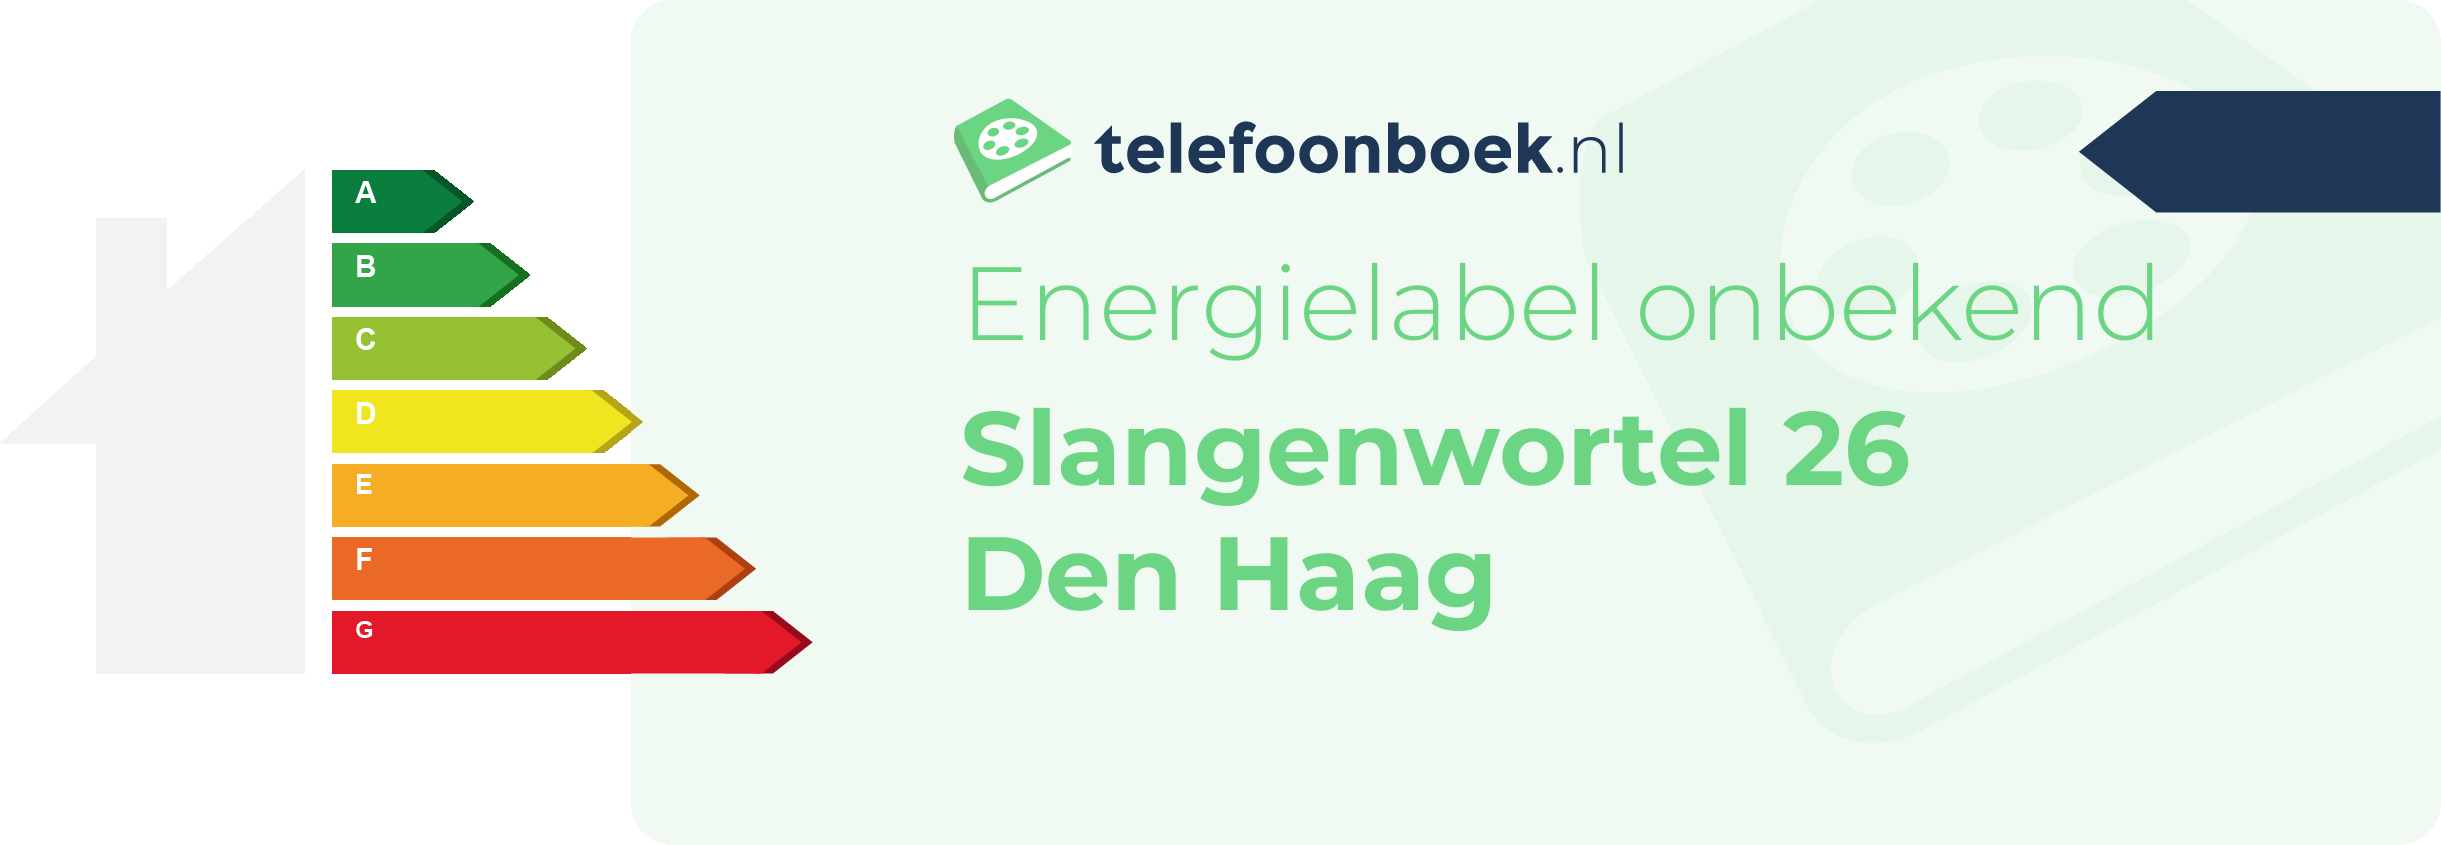 Energielabel Slangenwortel 26 Den Haag